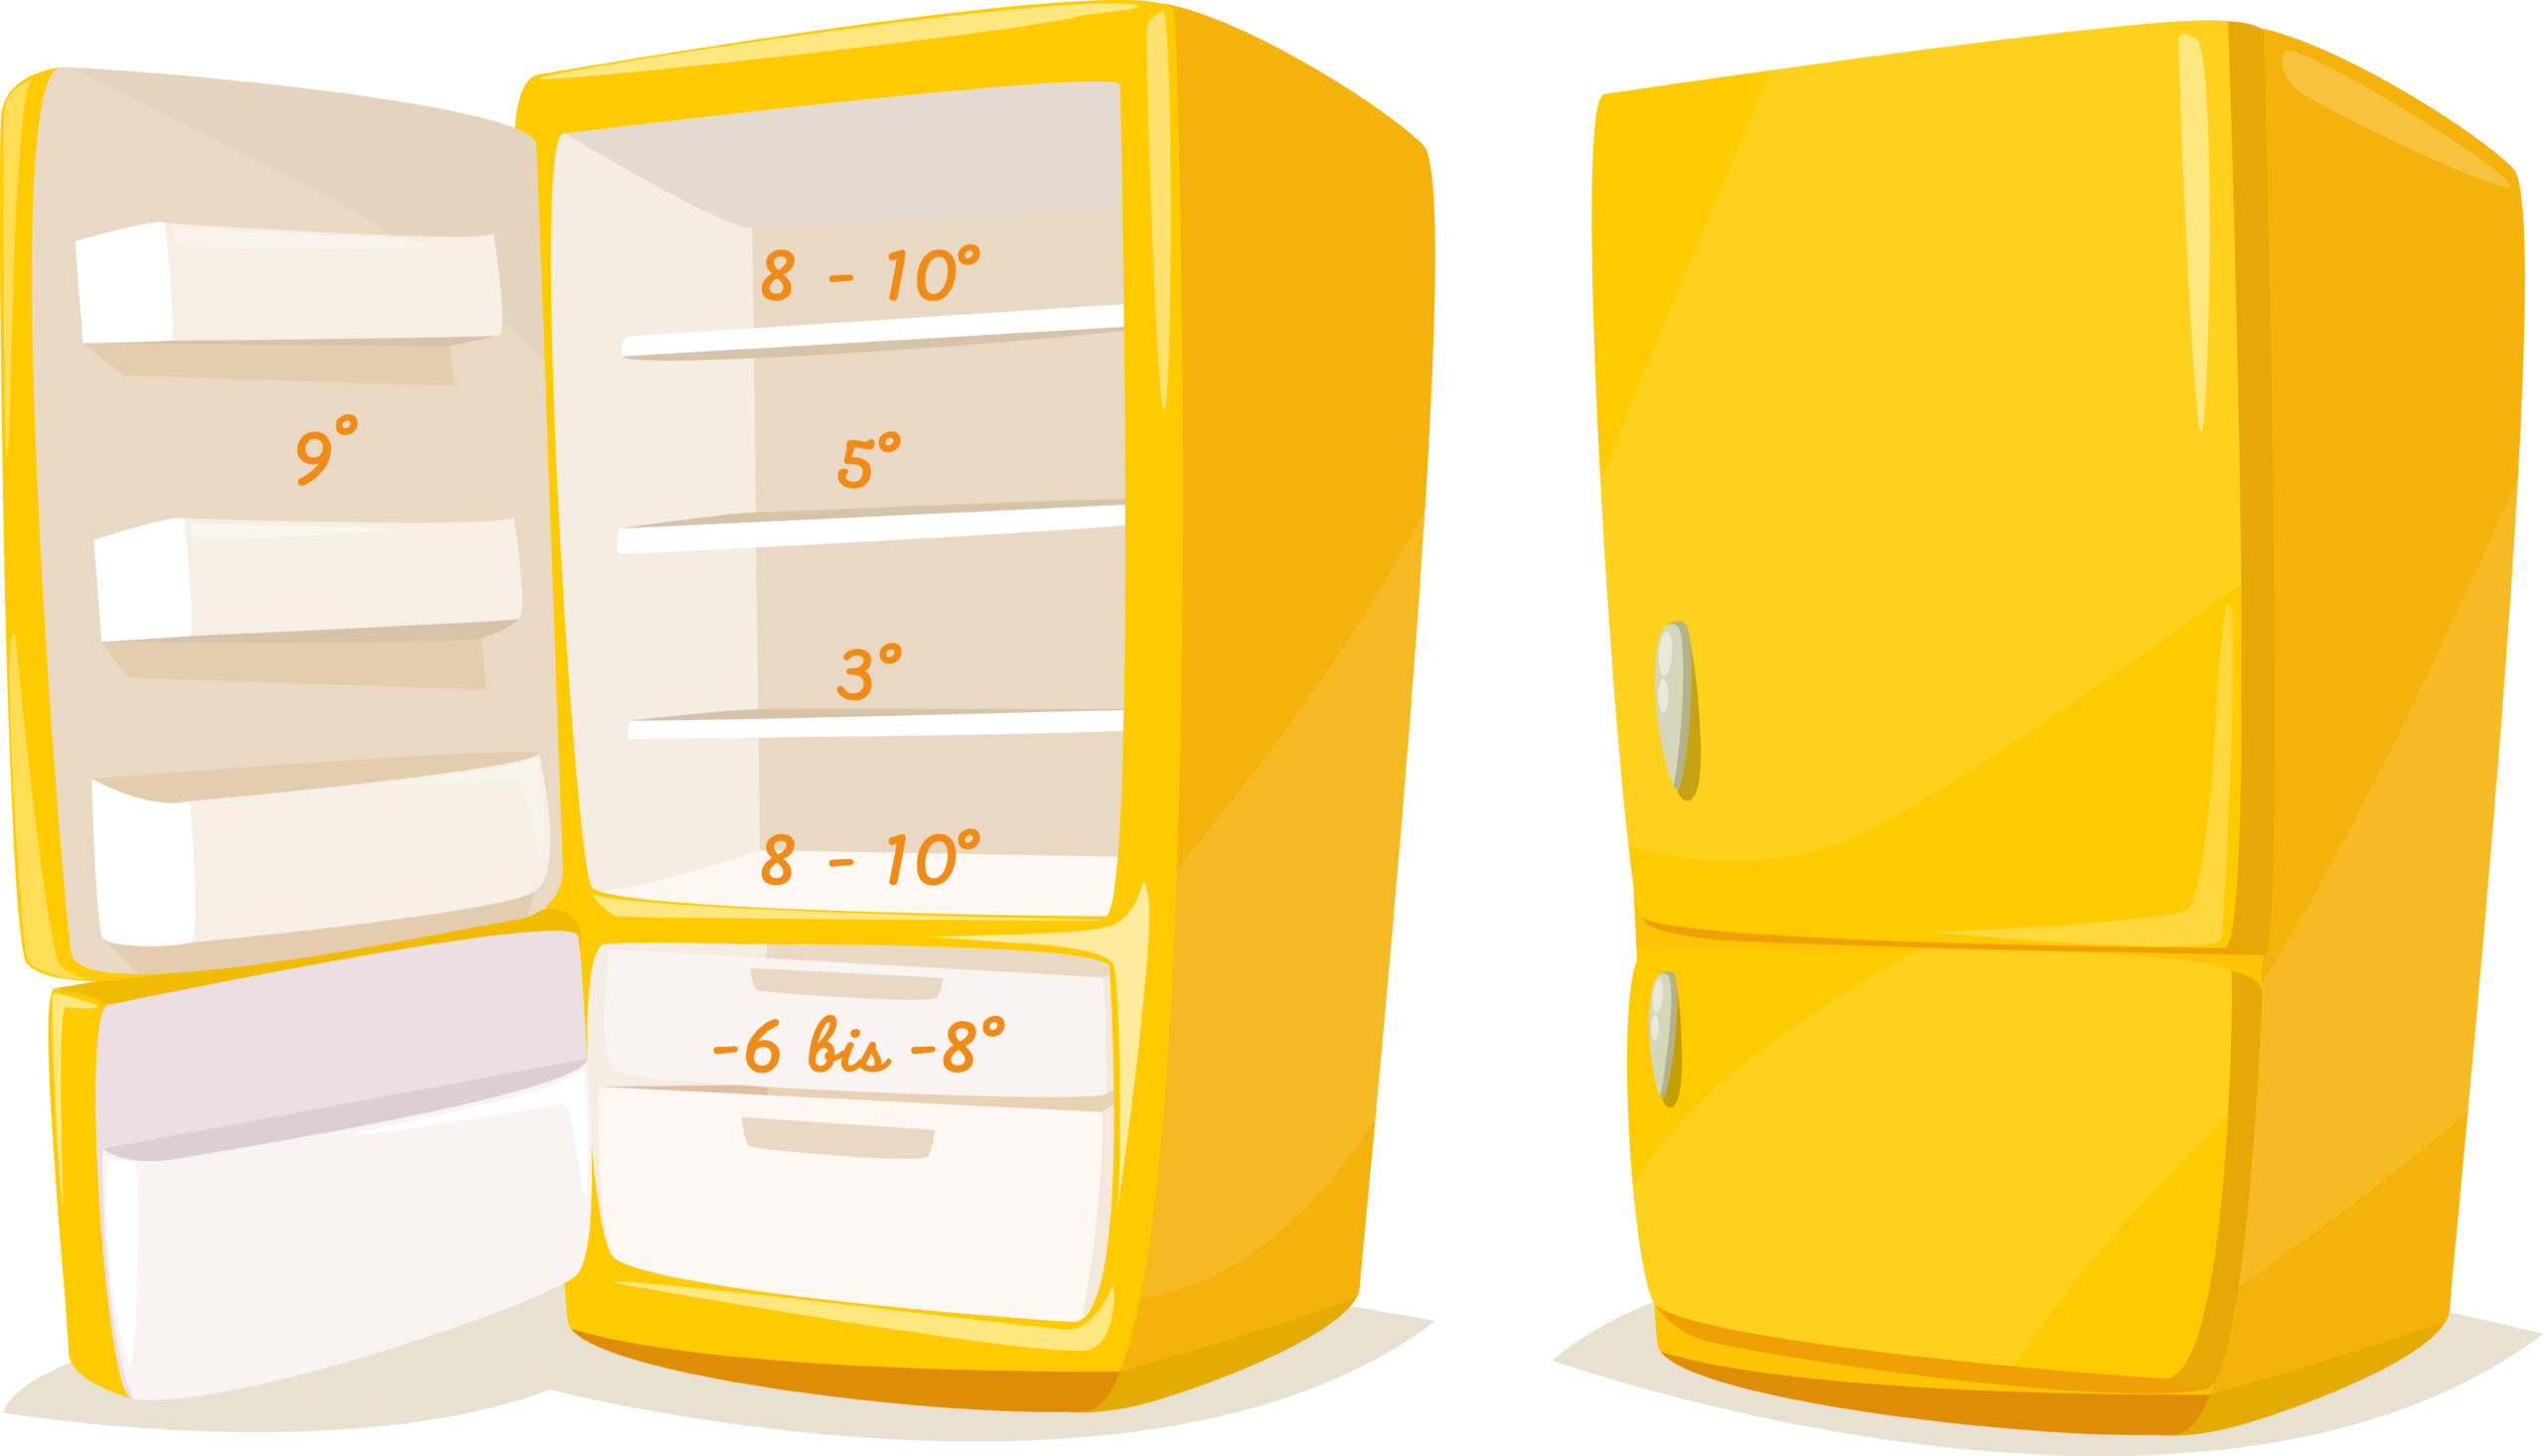 Lebensmittel im Kühlschrank lagern: Temperaturzonen